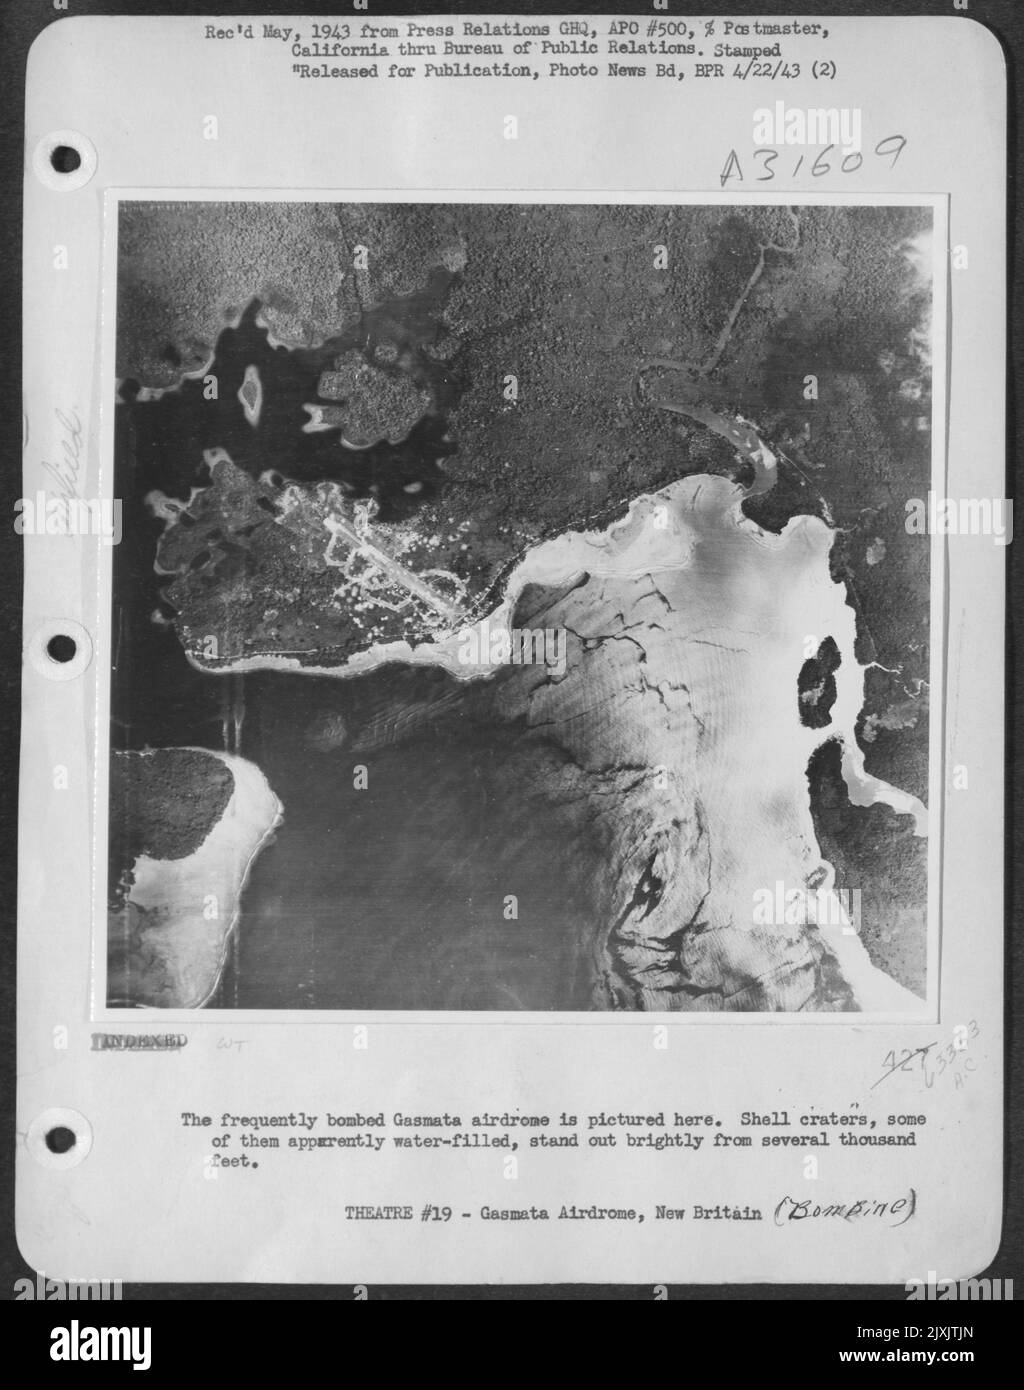 Qui è raffigurato l'airdrome di Gasmata, spesso bombardato. I crateri di conchiglia, alcuni dei quali apparentemente riempiti d'acqua, si distinguono brillantemente da diverse migliaia di piedi. Foto Stock